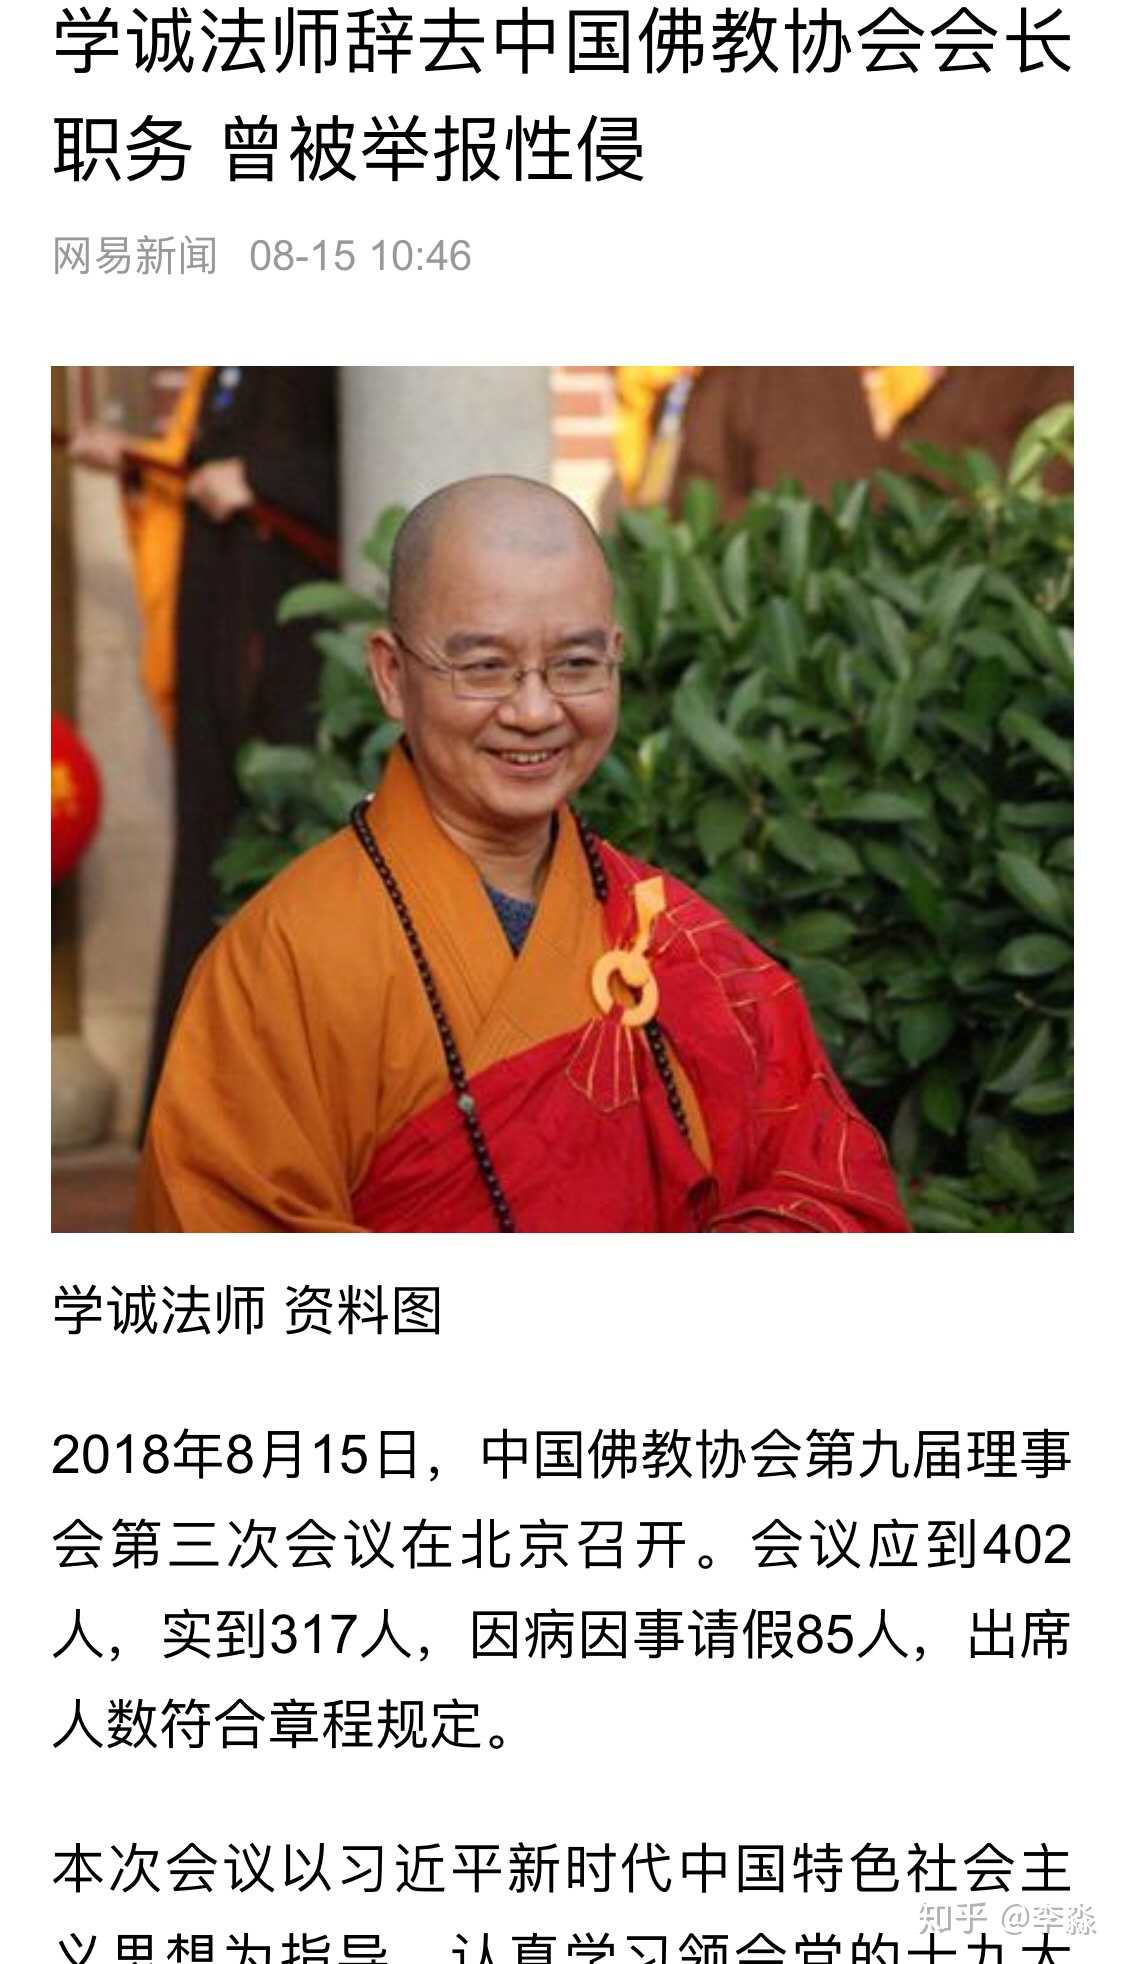 中国佛教协会会长学诚"发送骚扰短信"已被落实,进行纪律处分;性侵问题